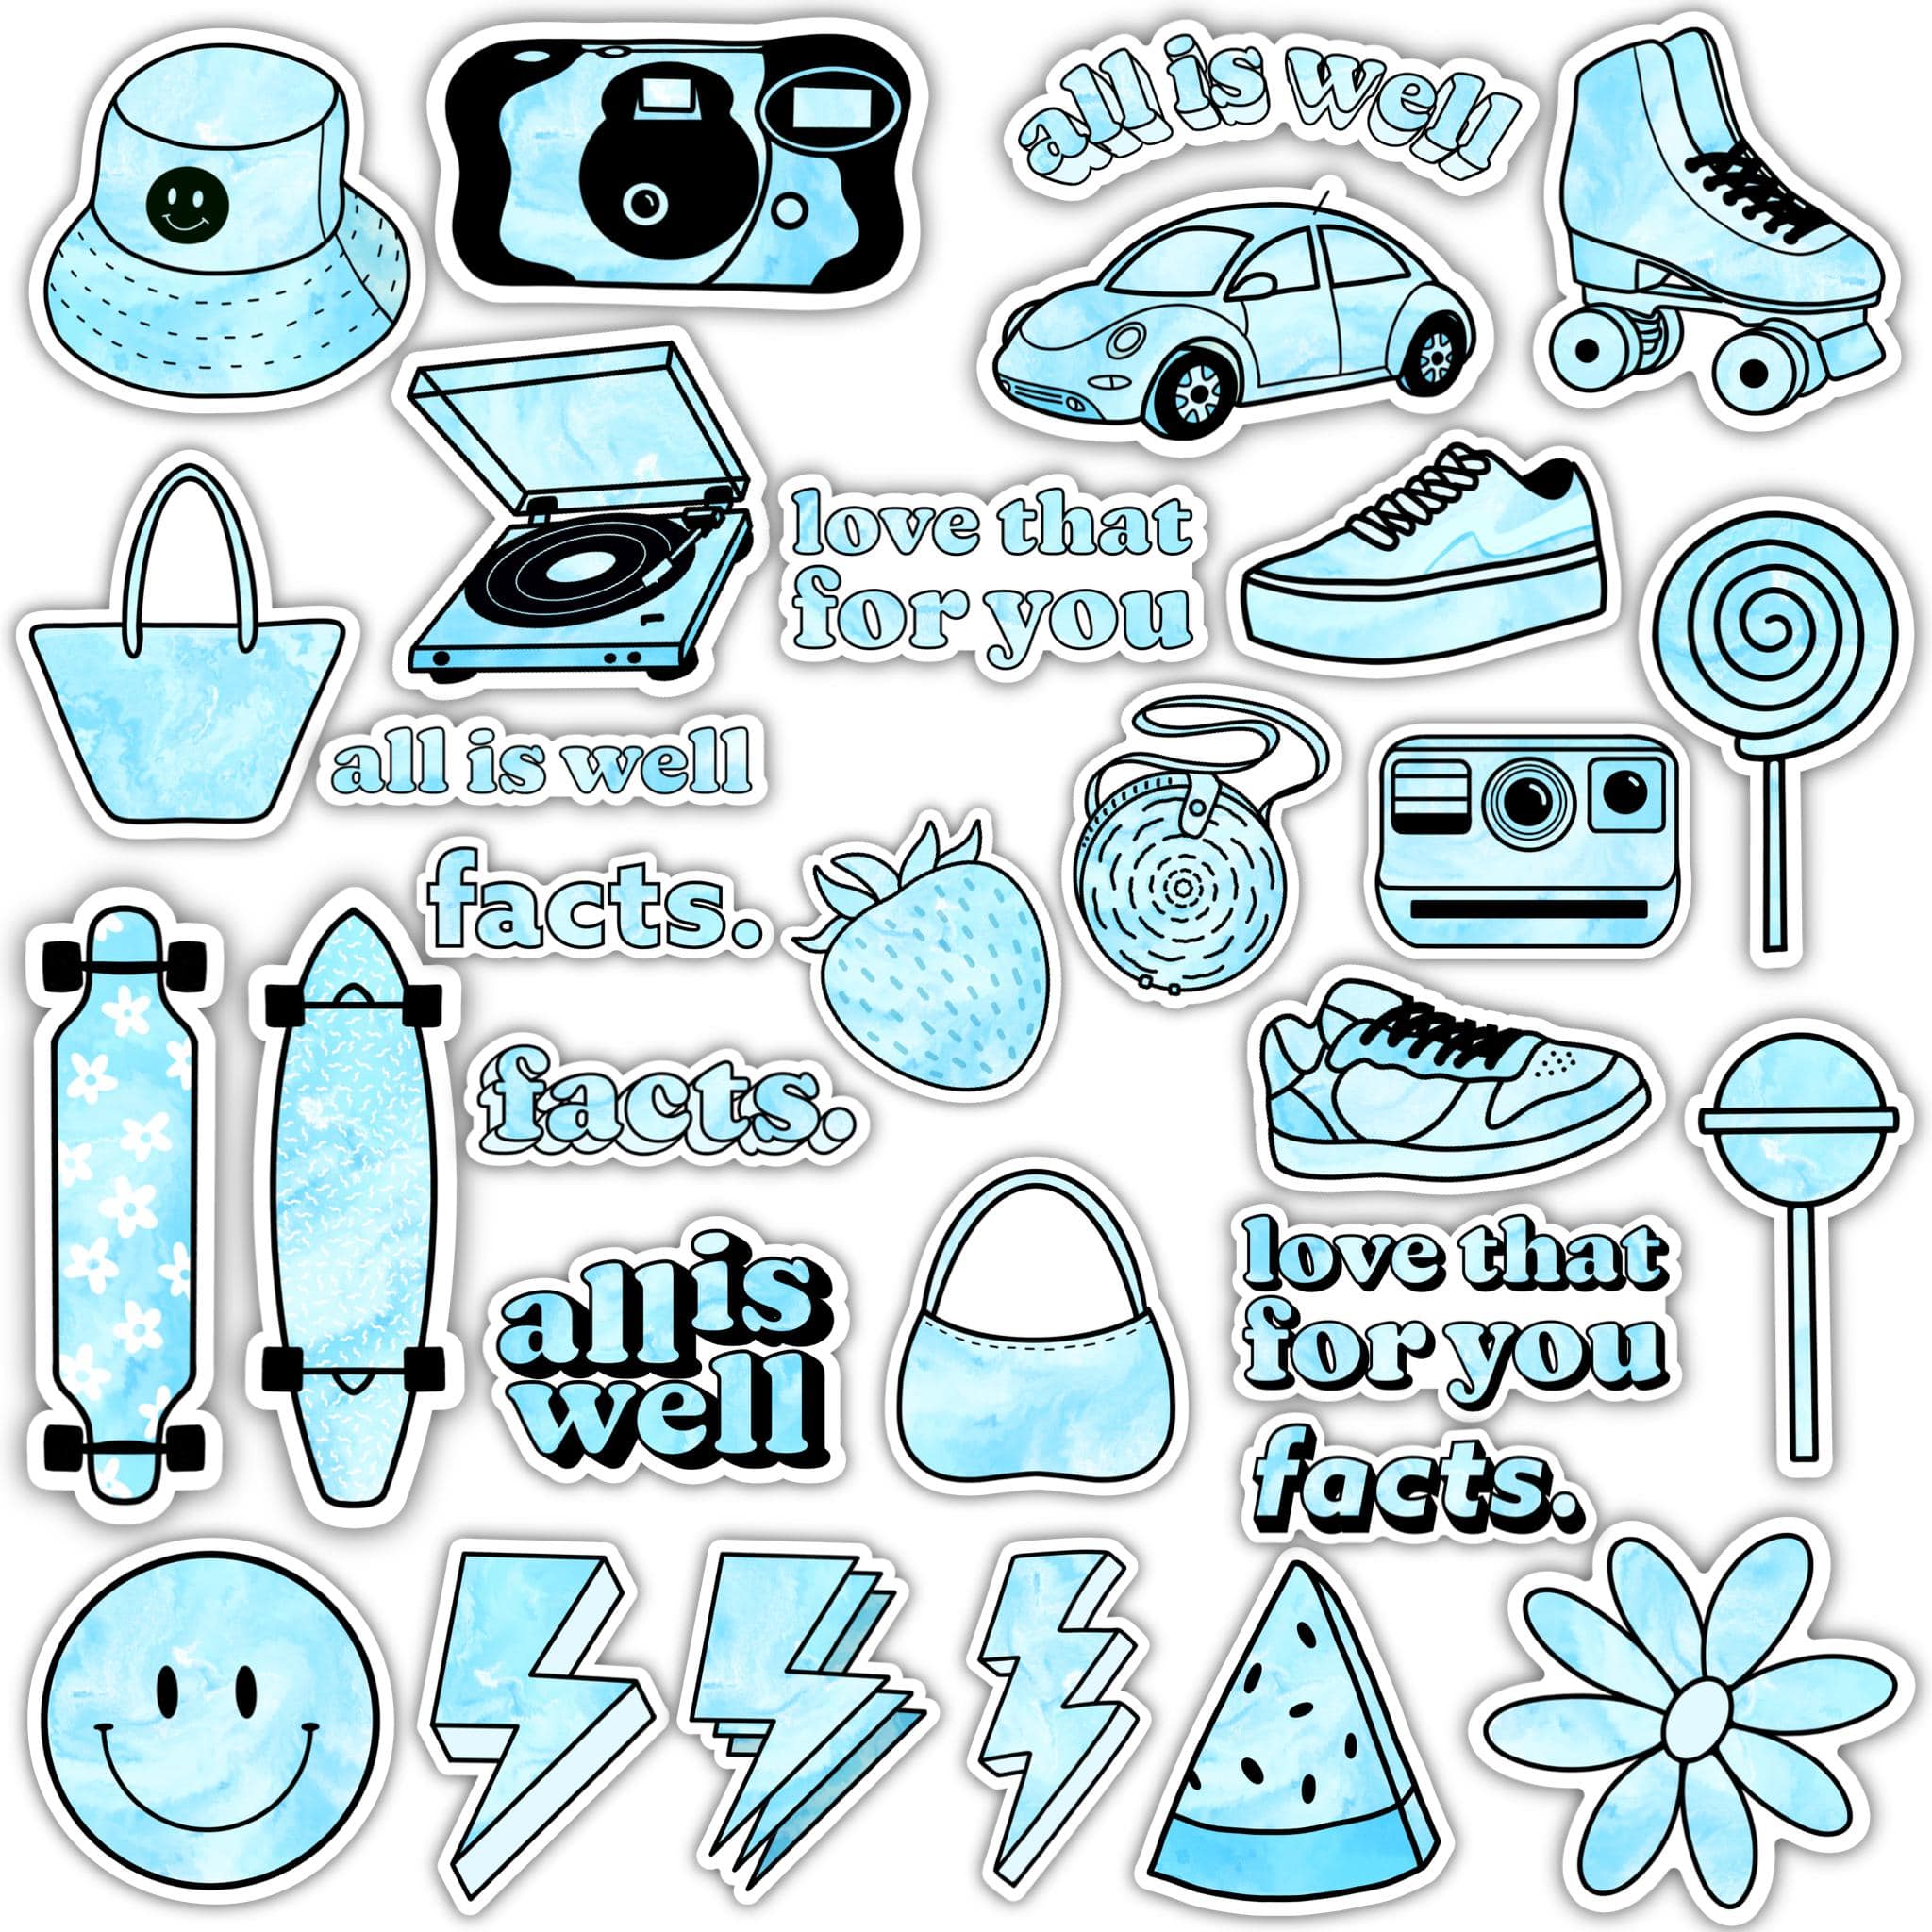 Big Moods Vsco Aesthetic Sticker Pack 5pc : Target